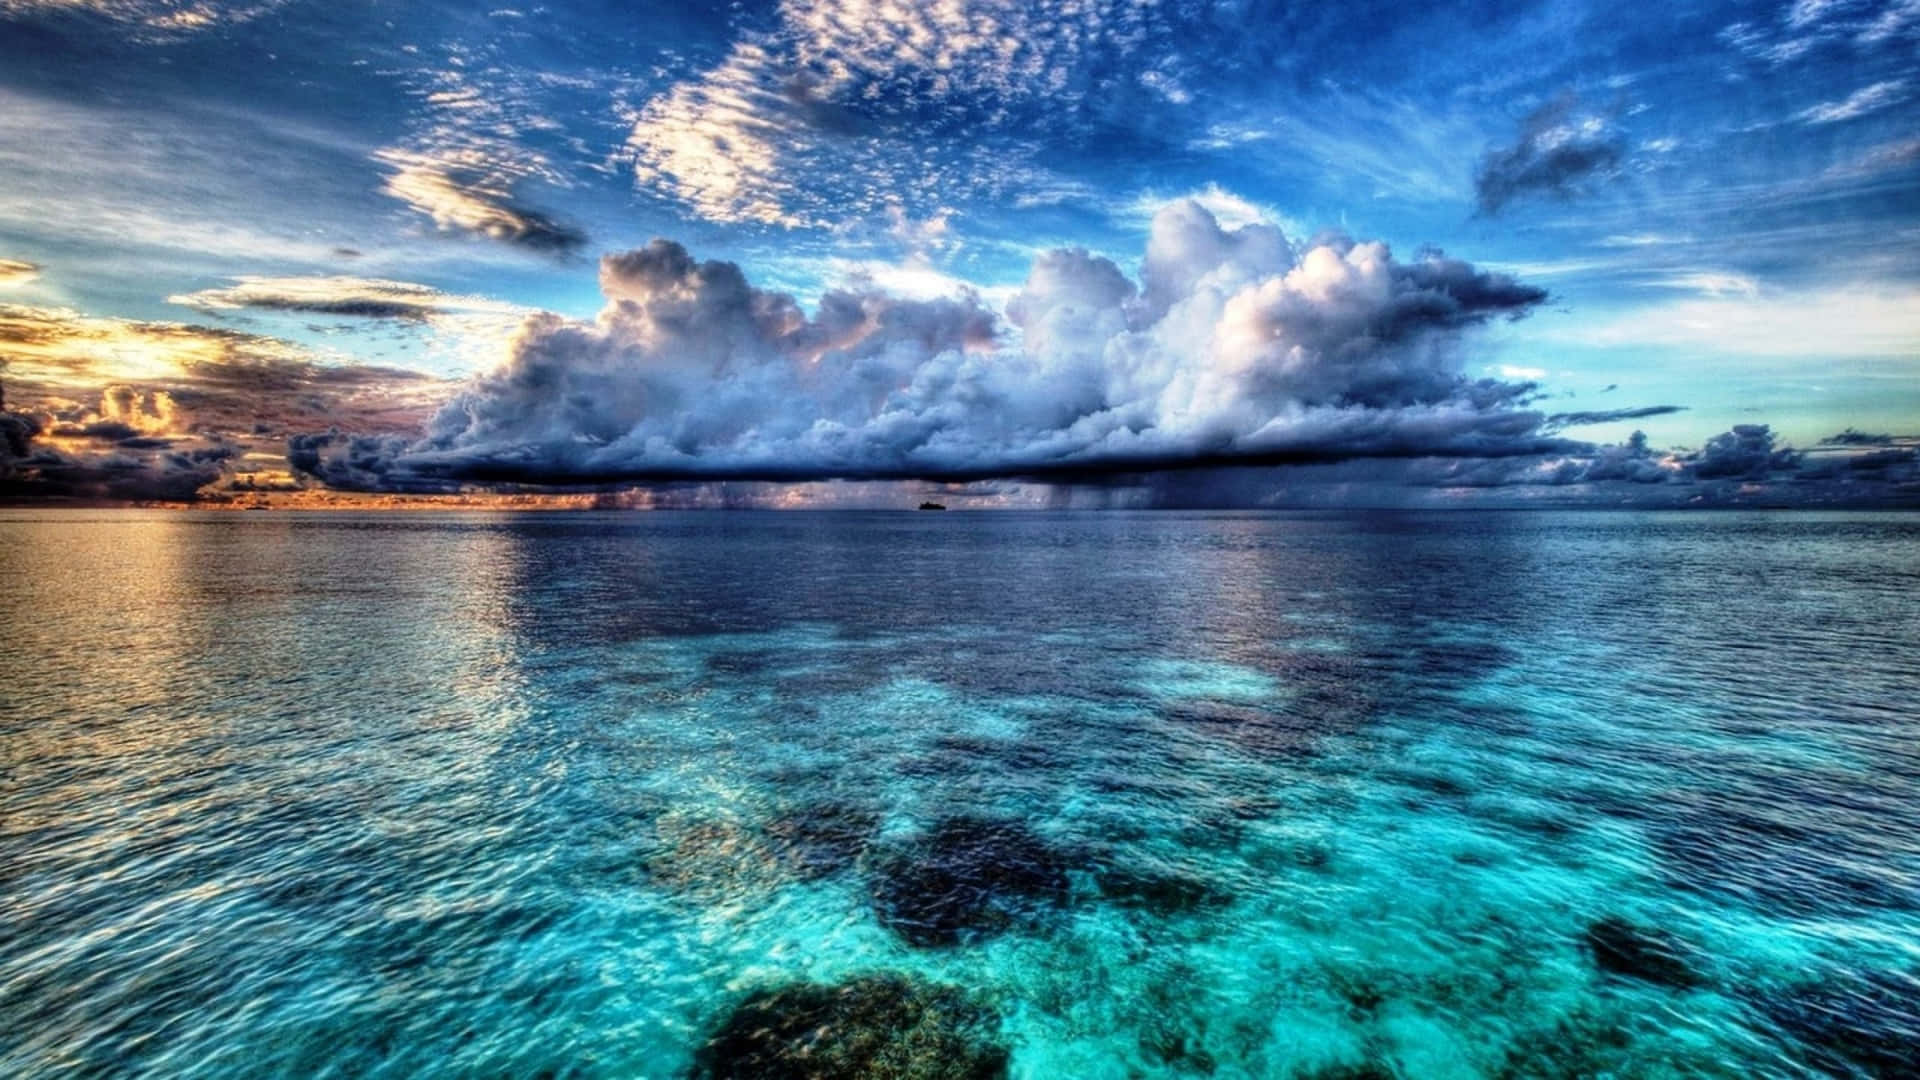 Einewolke Über Dem Meer Mit Blauem Wasser.